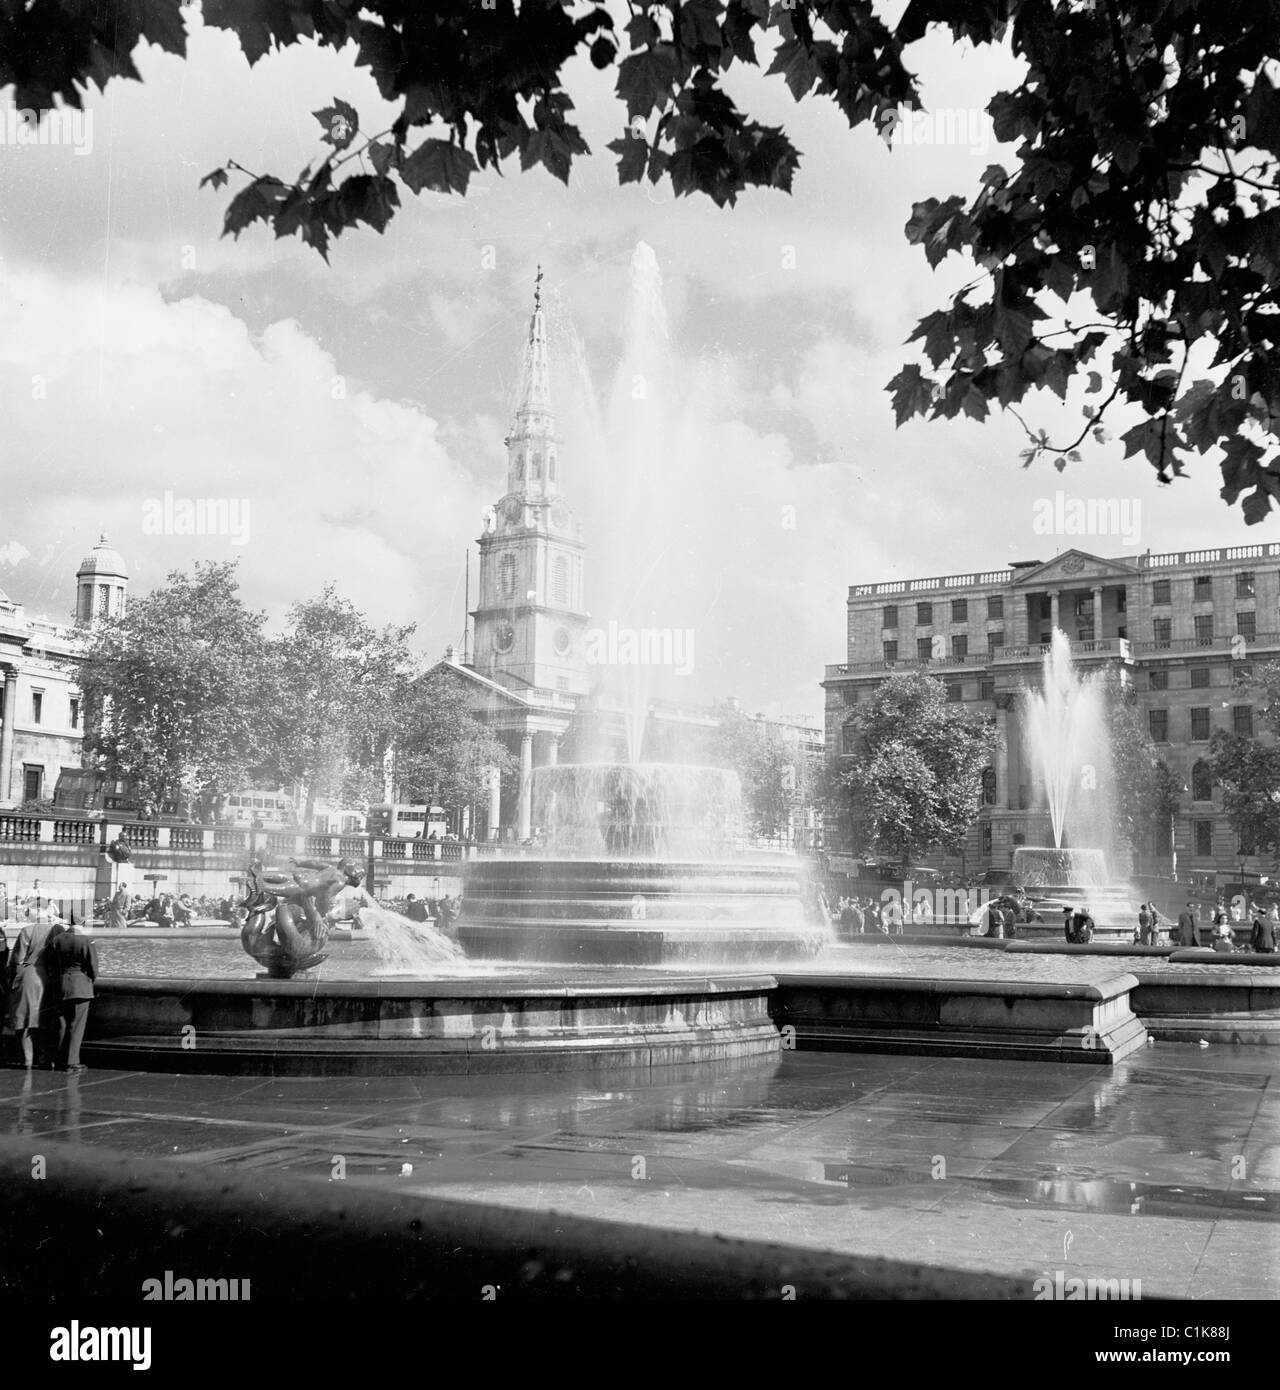 Die beiden Springbrunnen am Trafalgar Square in London, entworfen von Sir Edwin Lutyens als Gedenkstätte für die Lords Jellicoe und Beaty, ersetzten die früheren 1950. Stockfoto